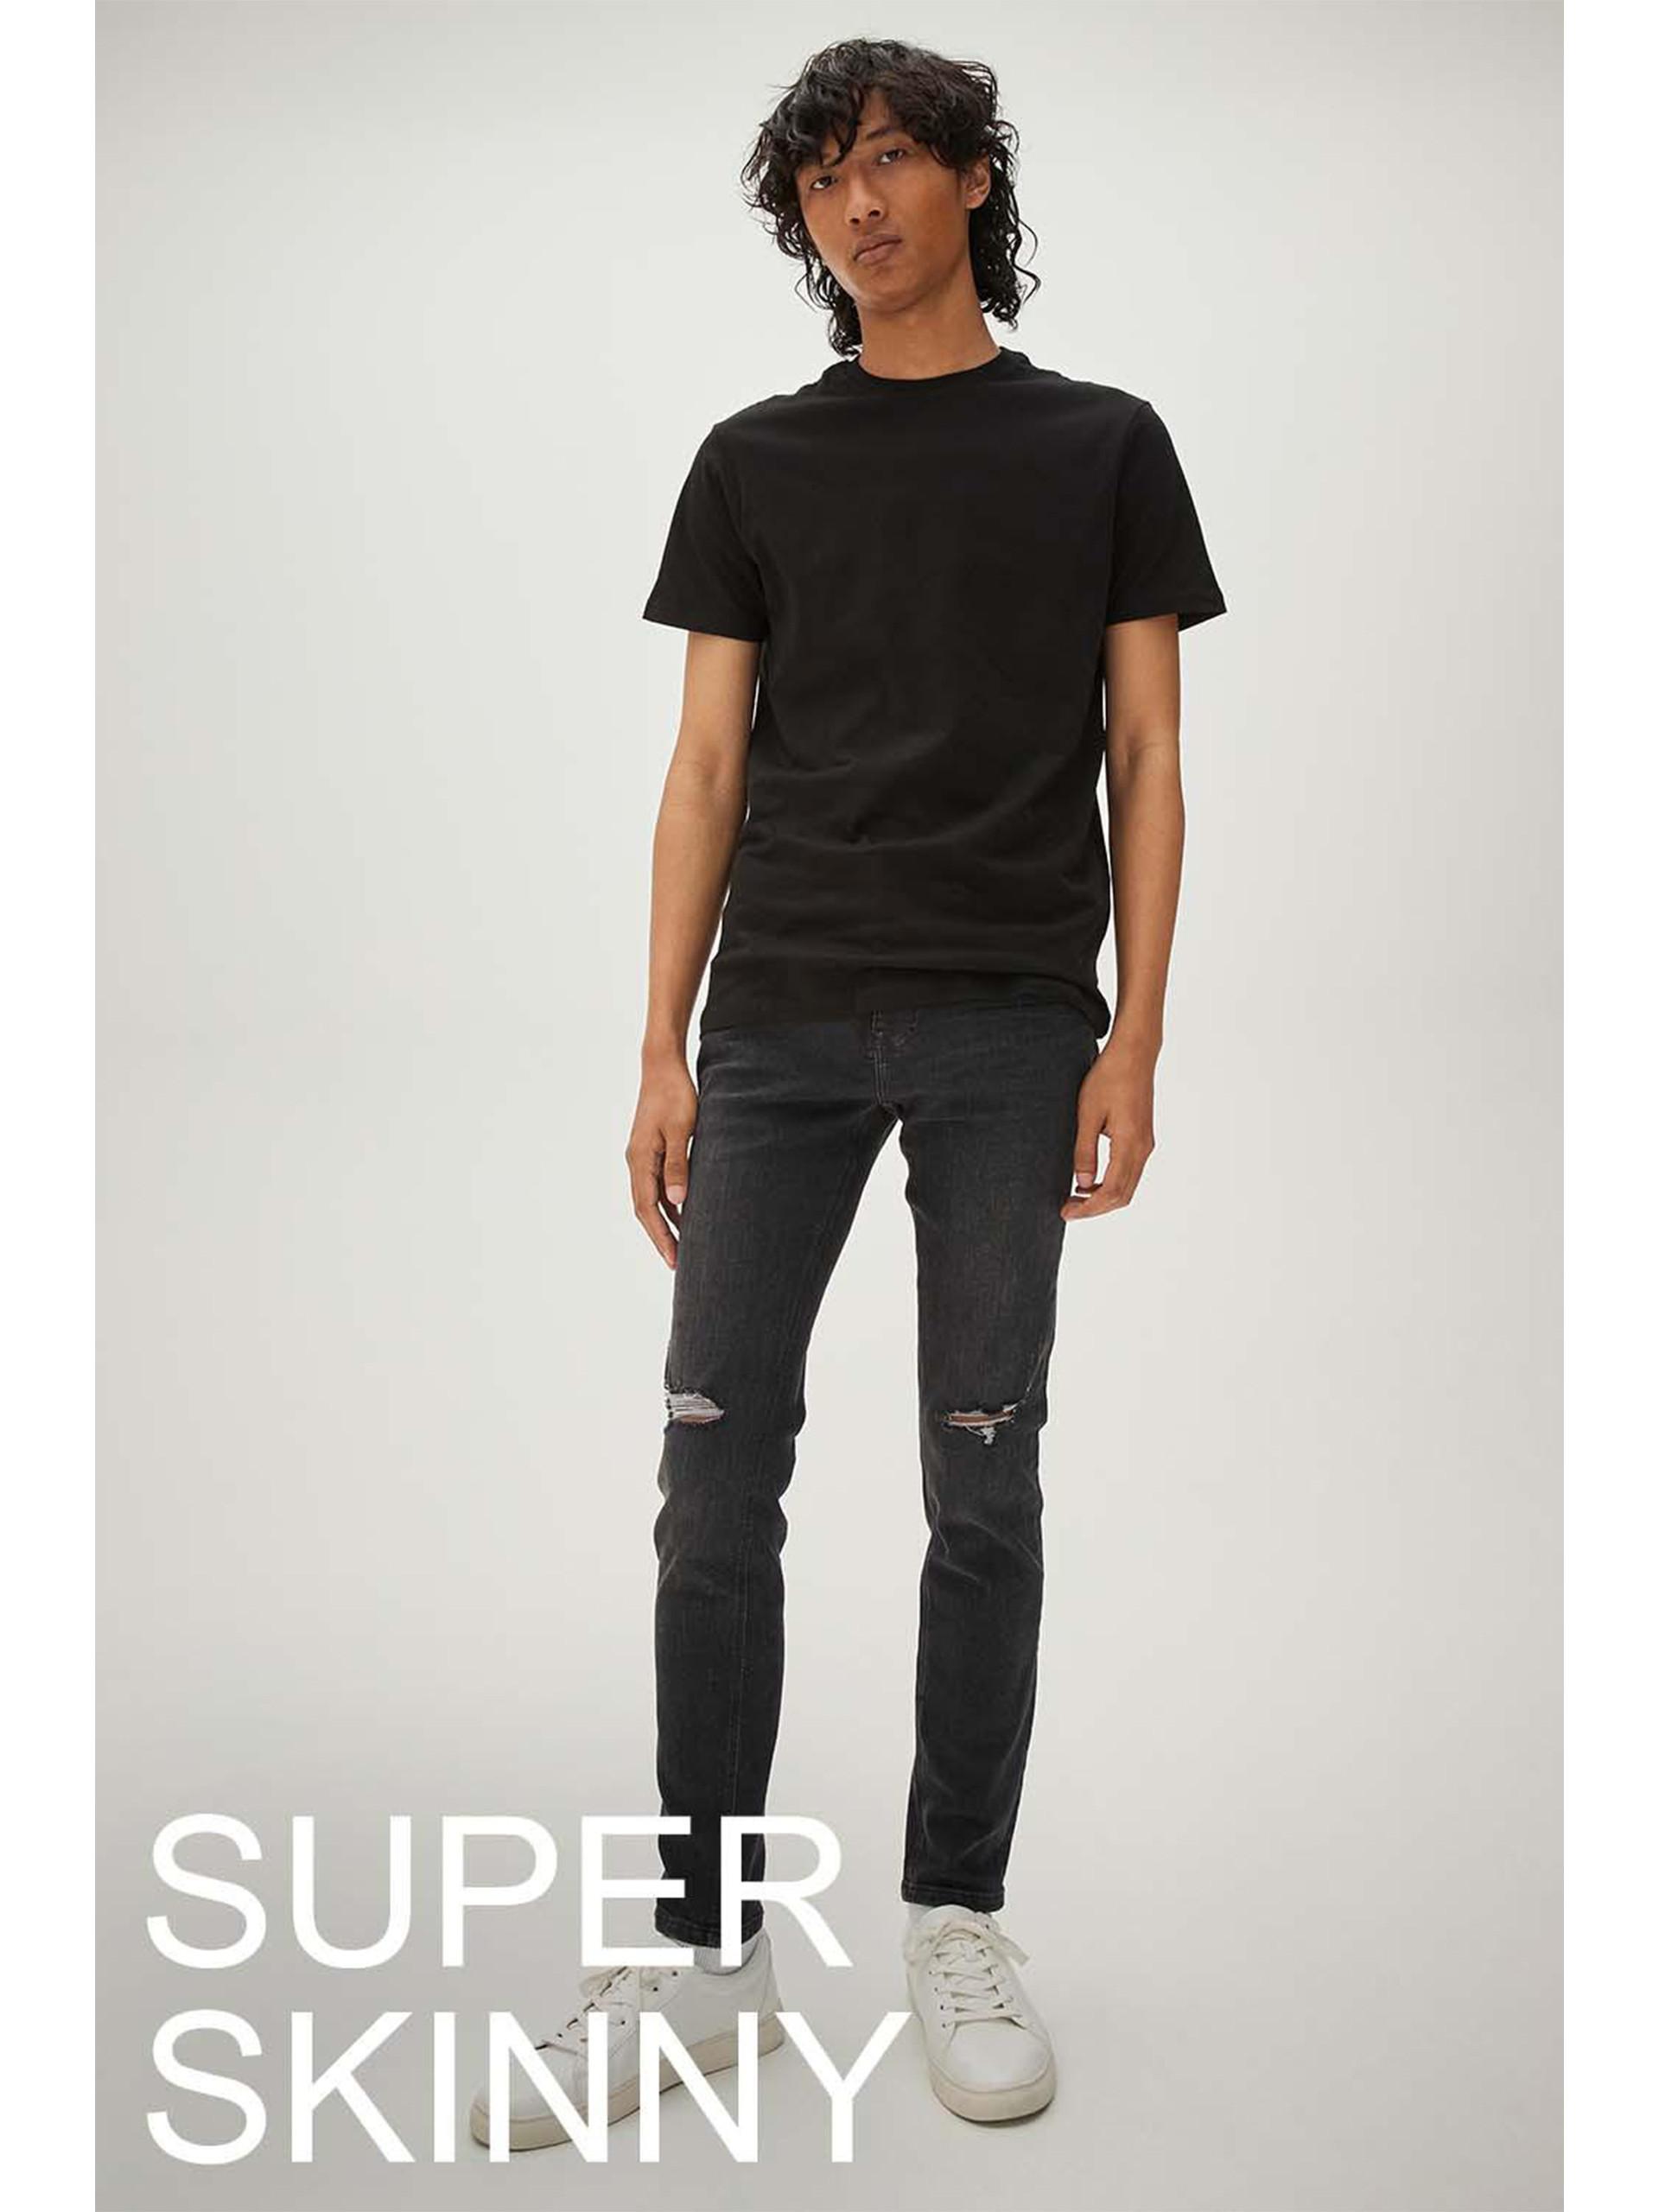 Model in een zwarte superskinny jeans met gescheurde knieën